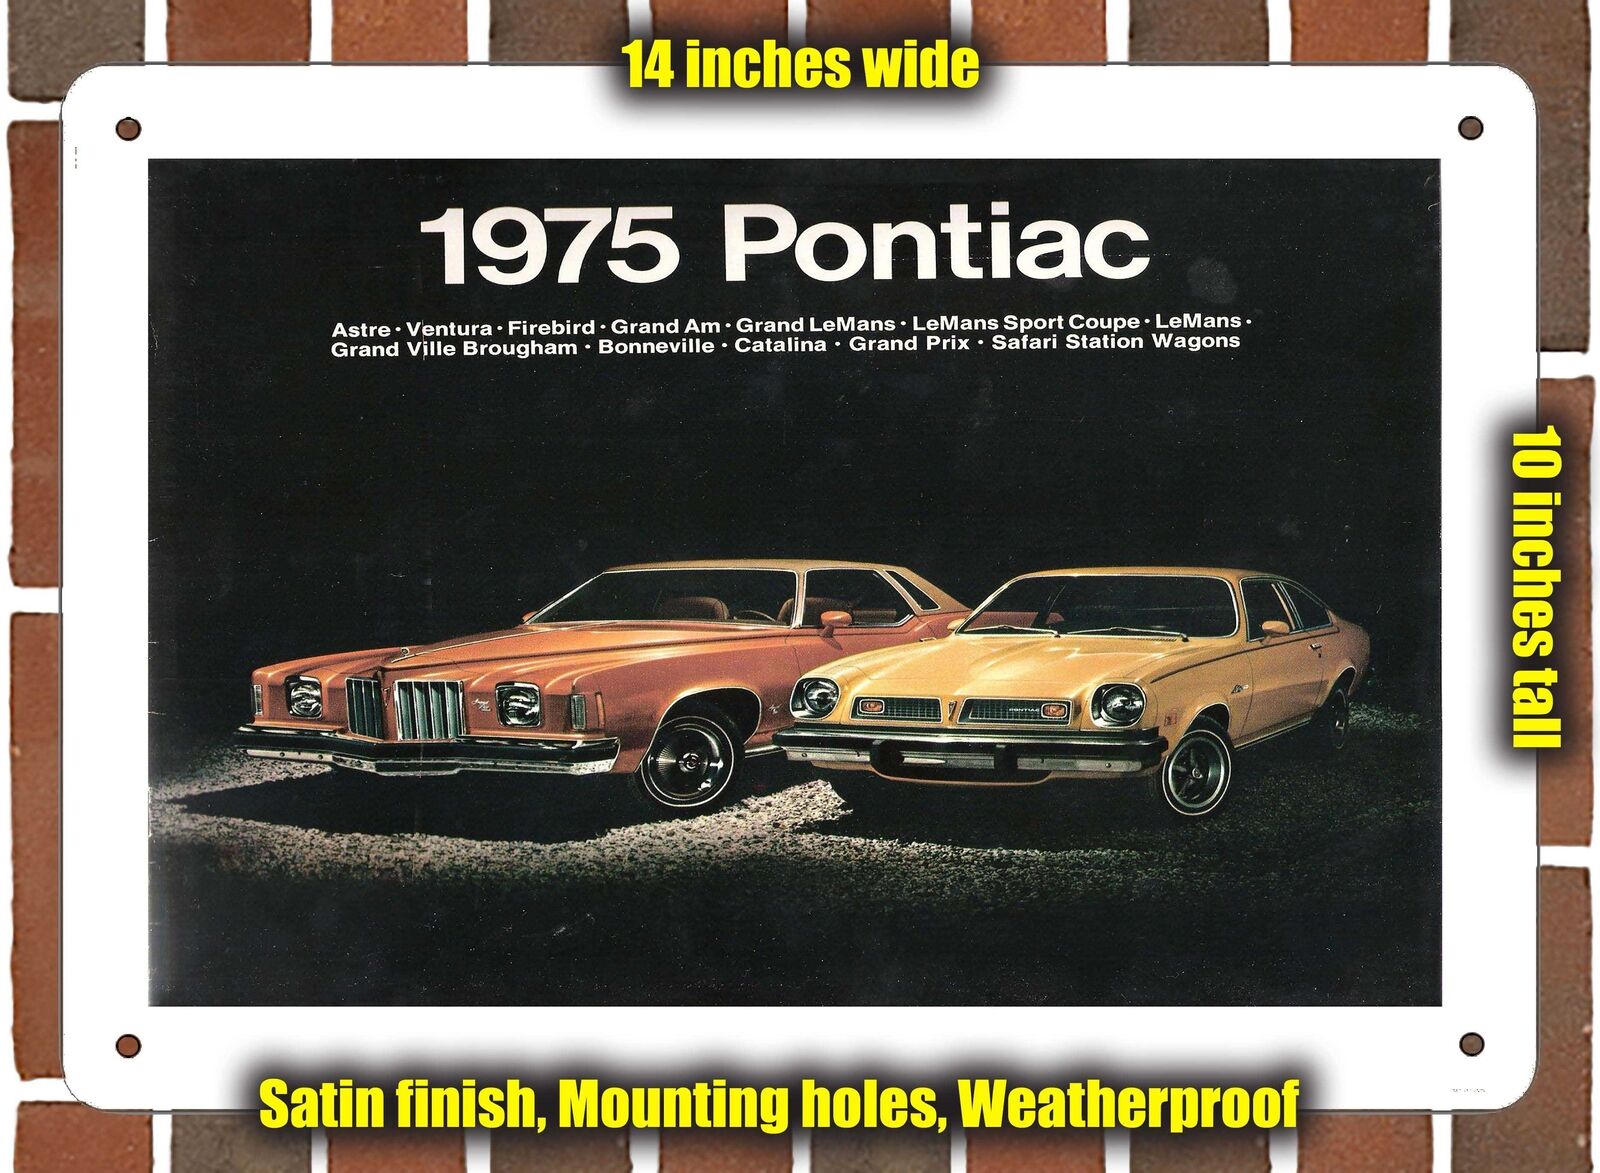 METAL SIGN - 1975 Pontiac